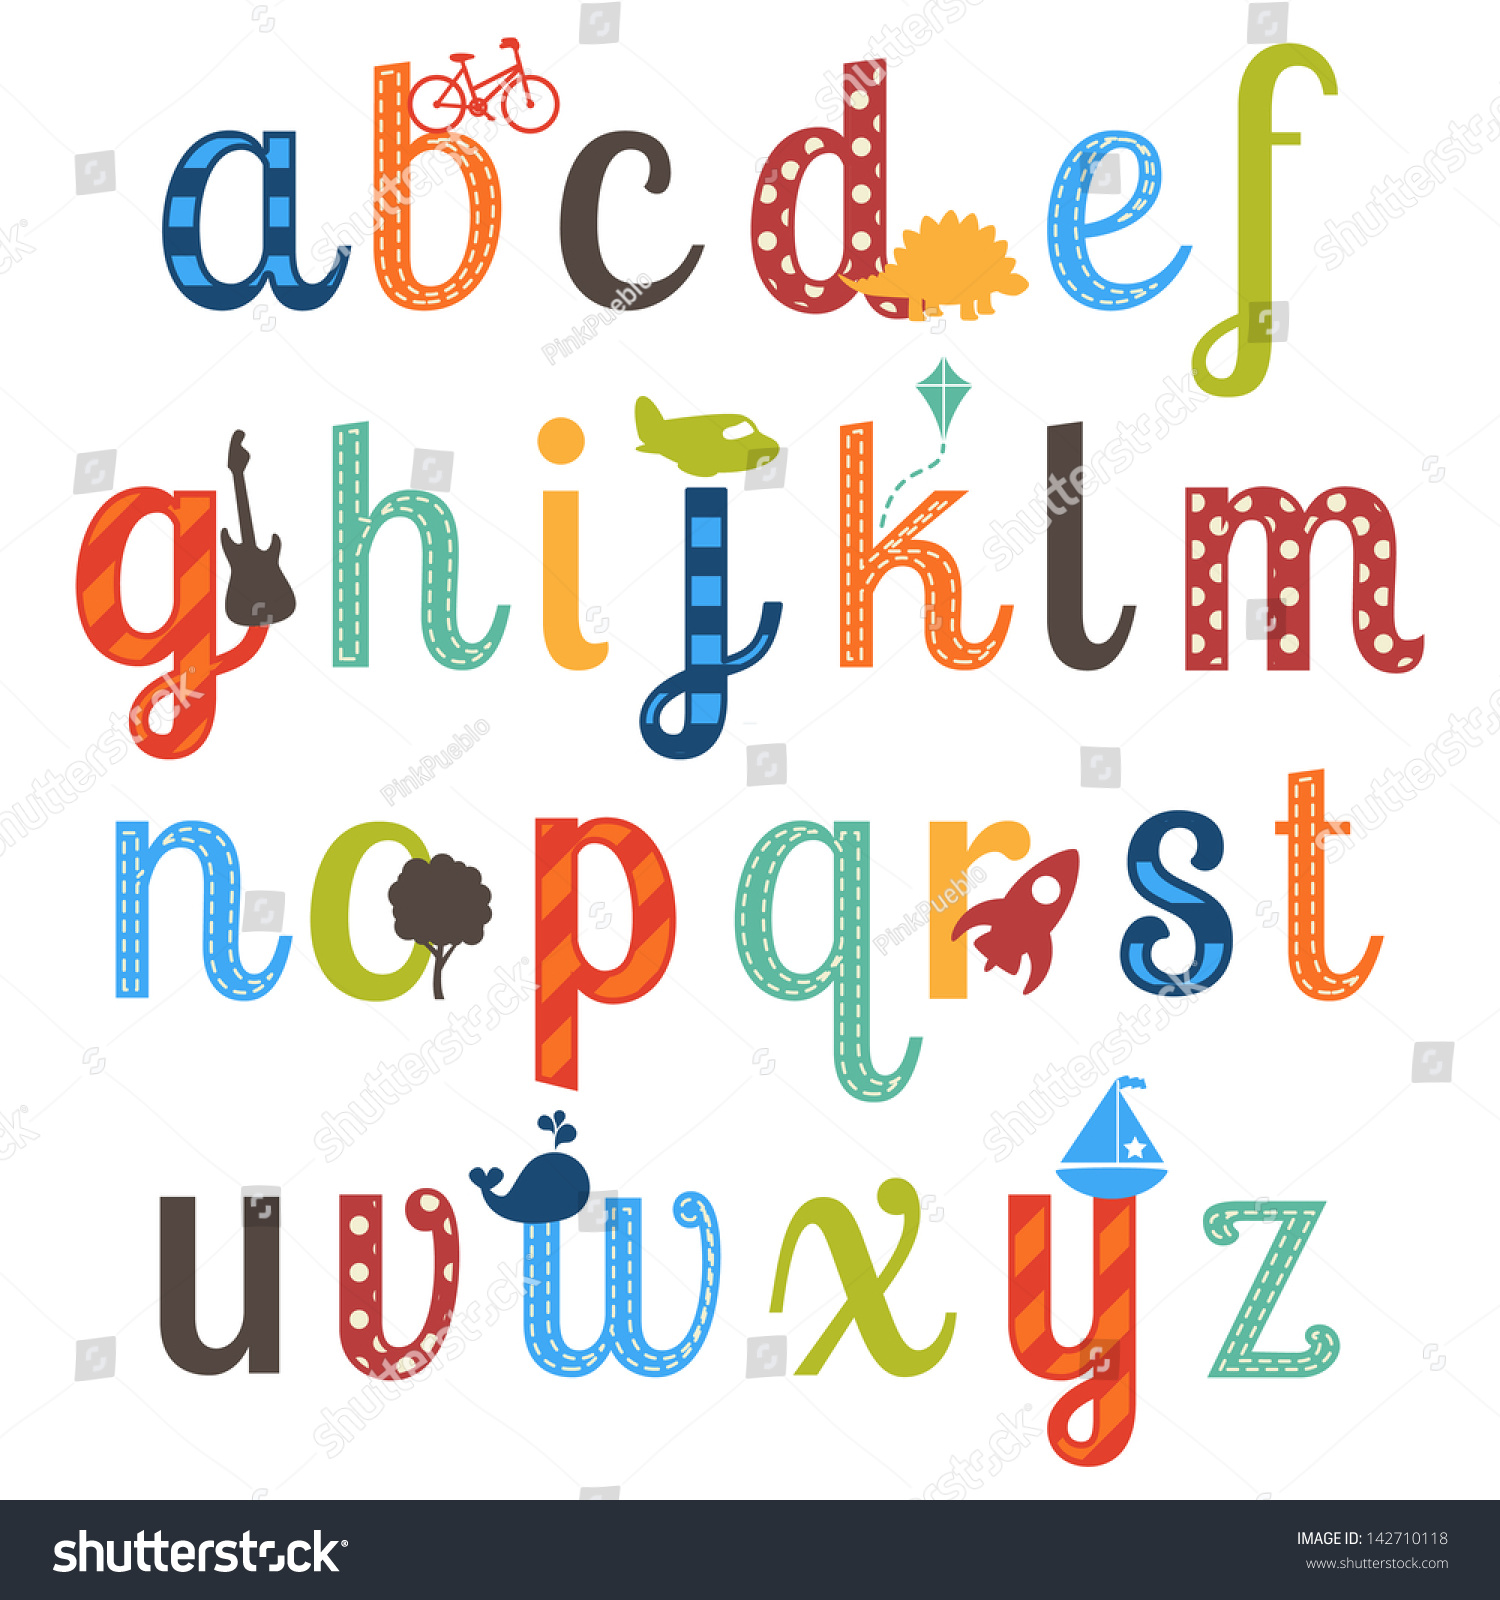 Cute Boy Themed Alphabet Vector Set - 142710118 : Shutterstock